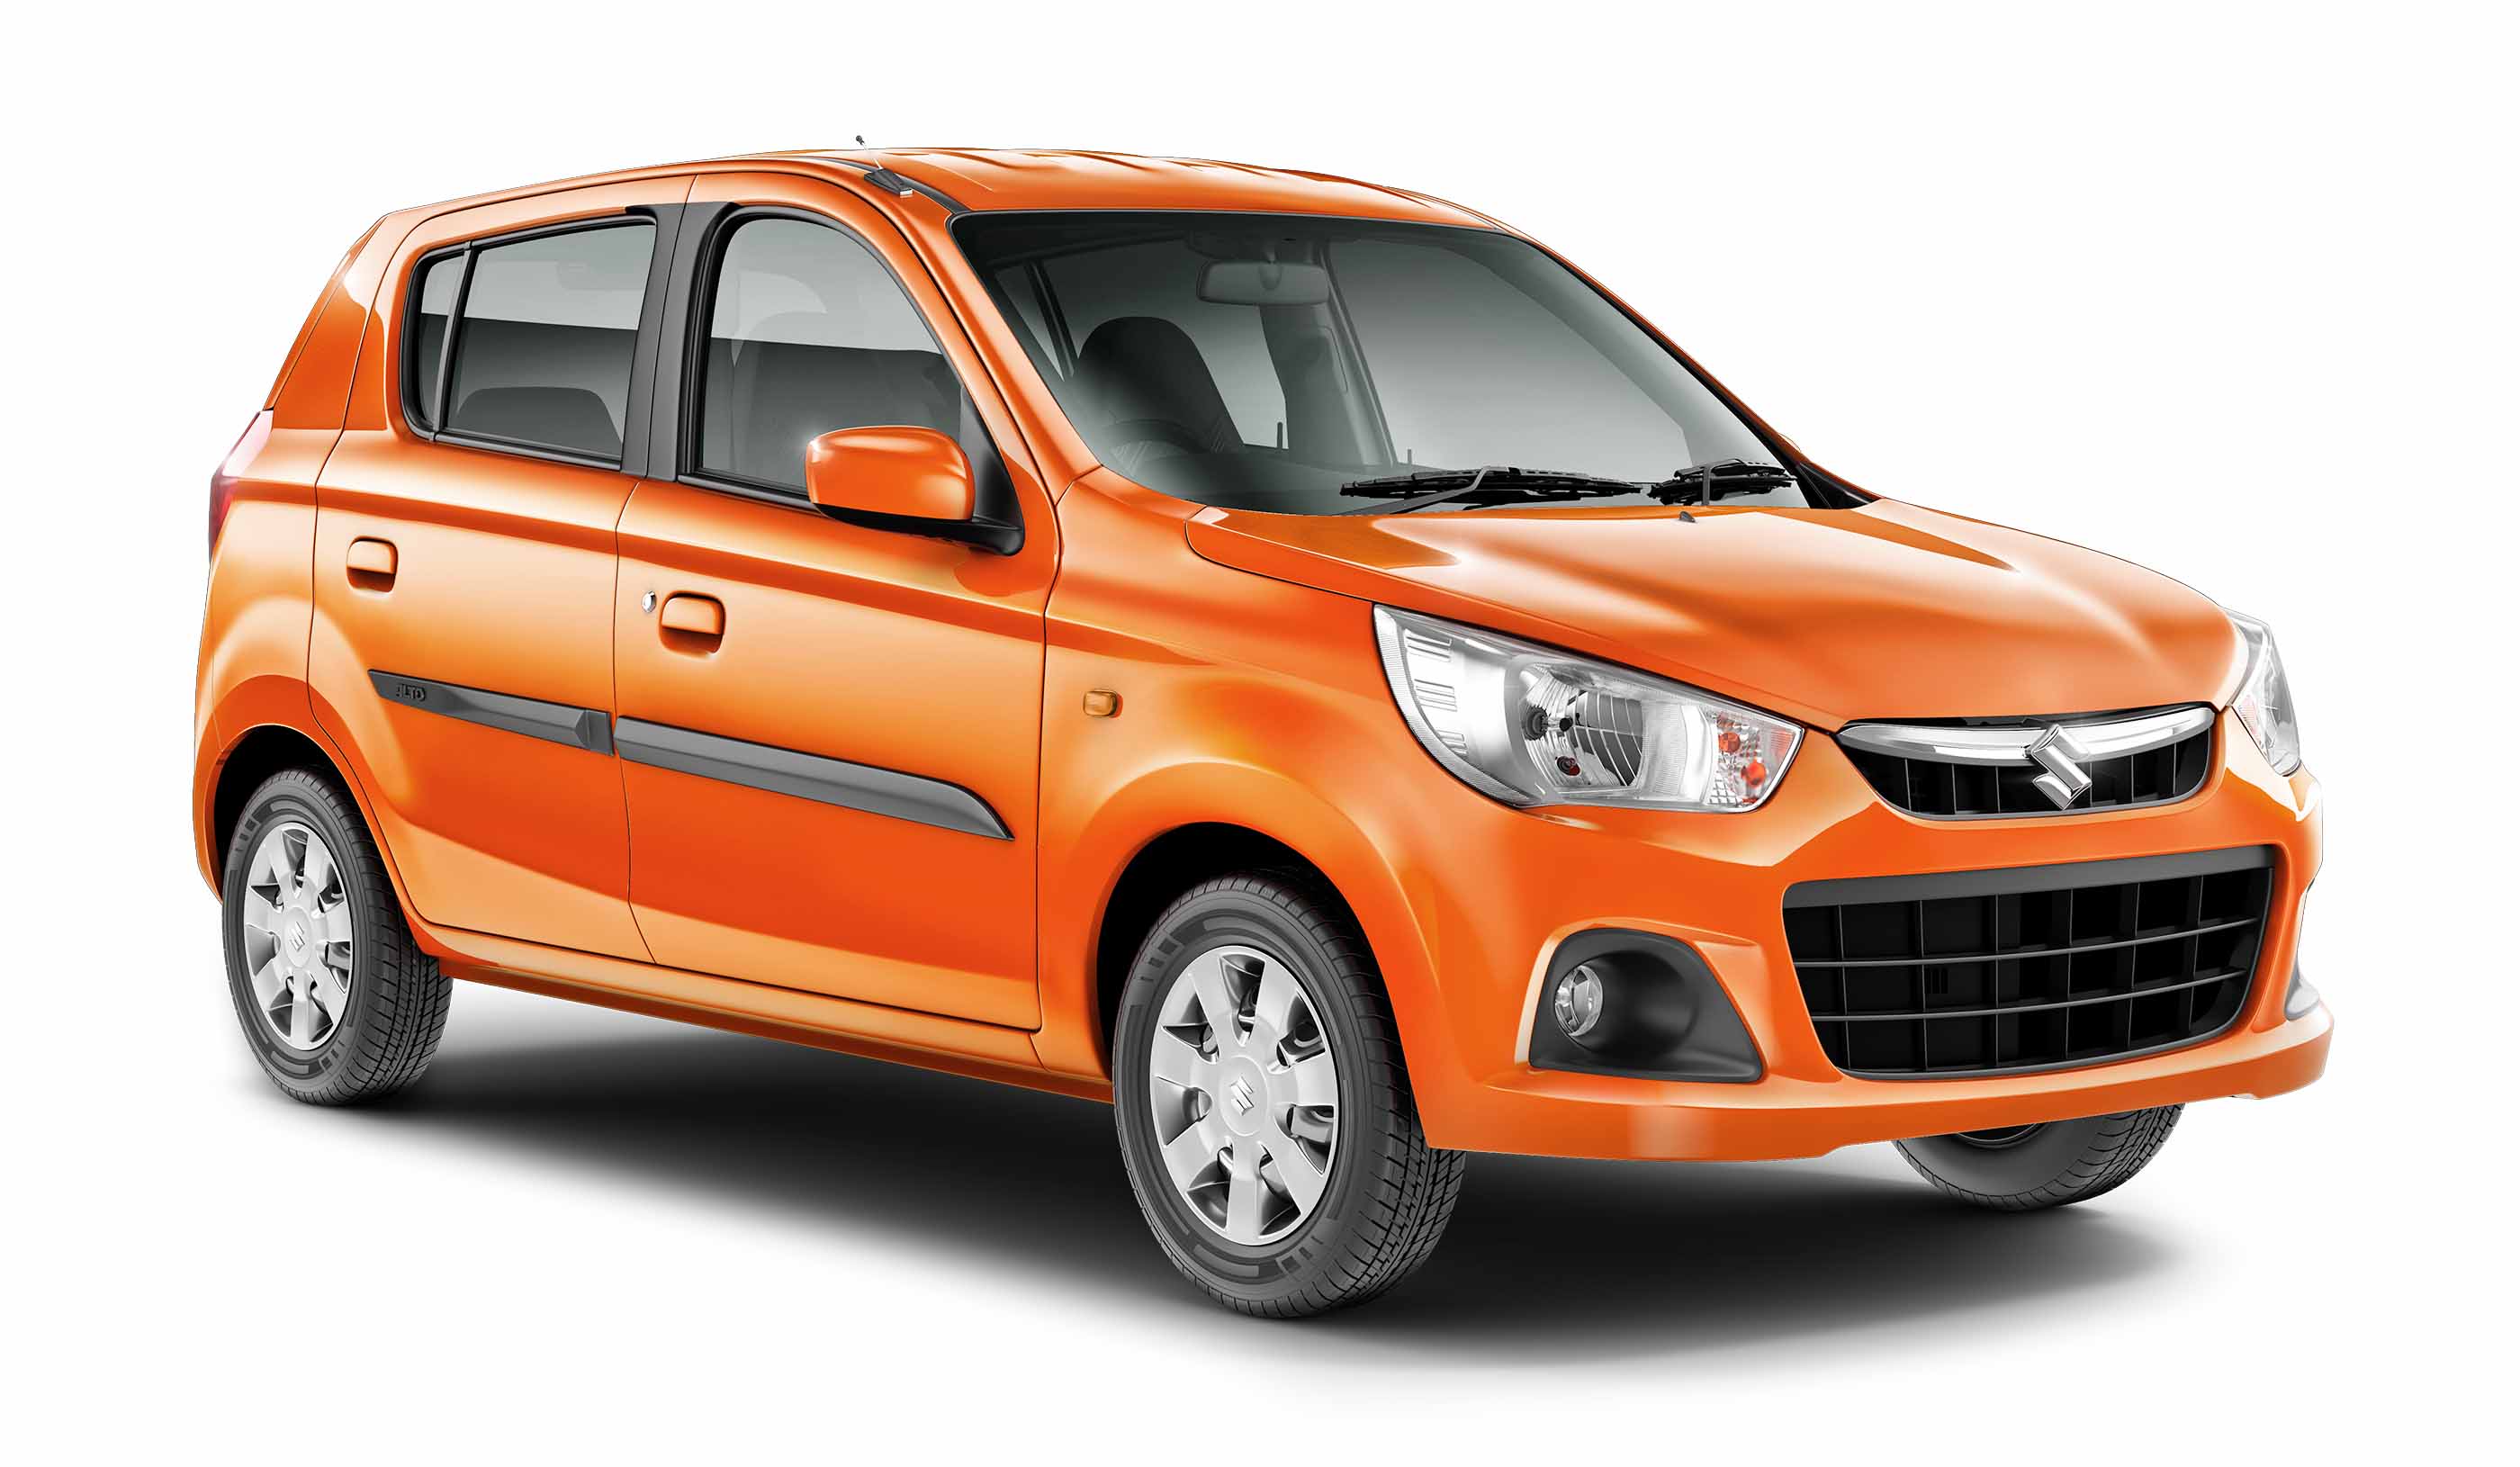 Maruti Suzuki Alto K10 In Orange Color 4k Uhd Car Wallpaper